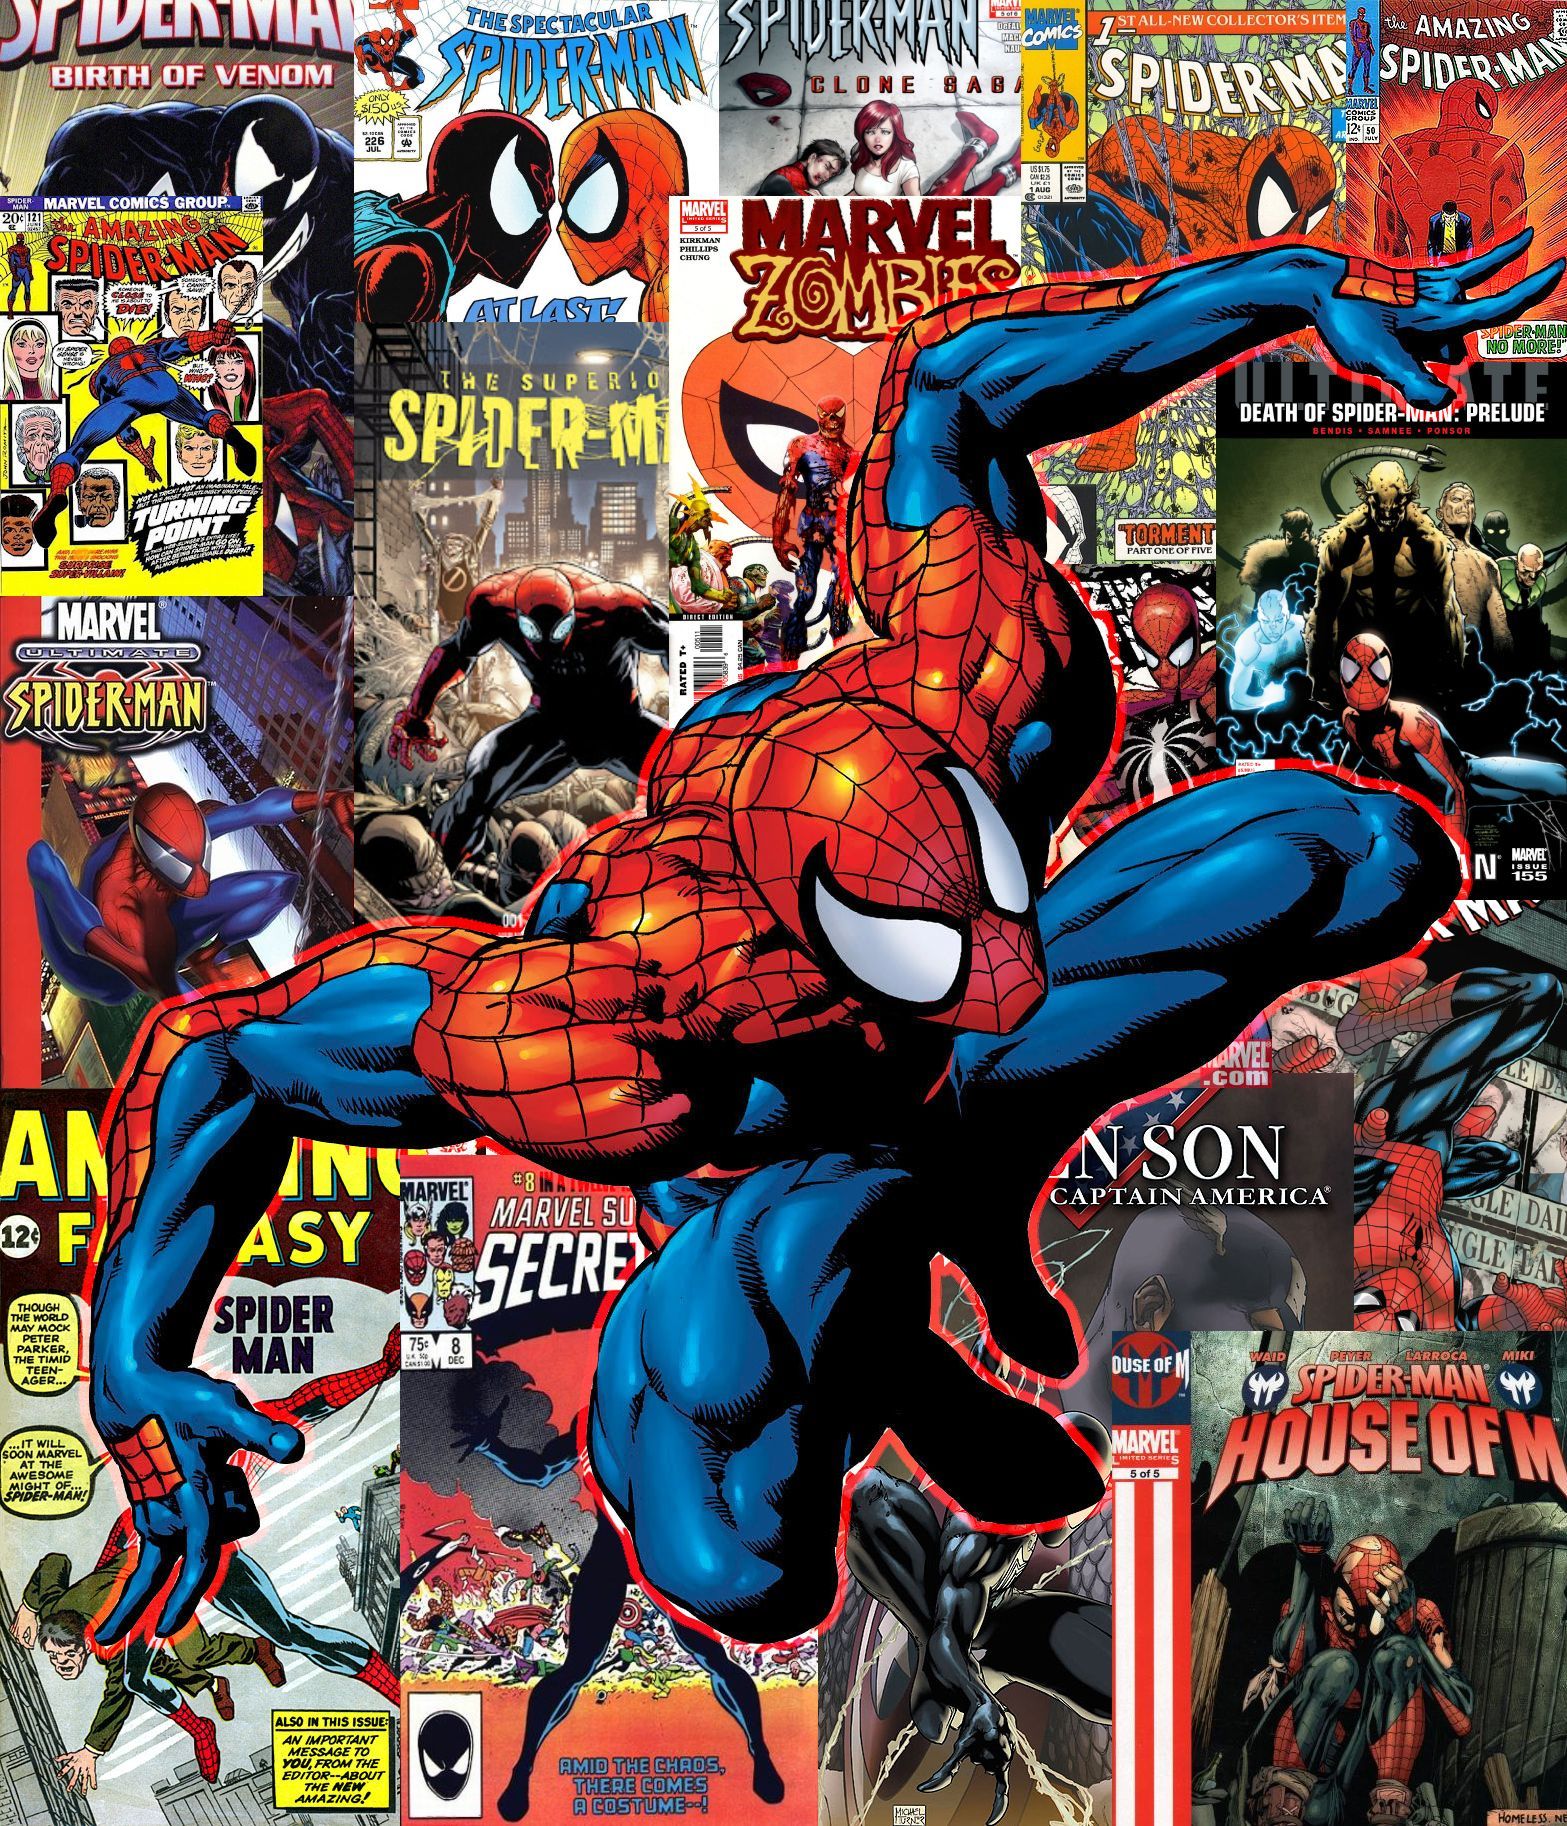 Spider-Man Comicbook Cover Collection Wallpaper por UndeadPixelArmy